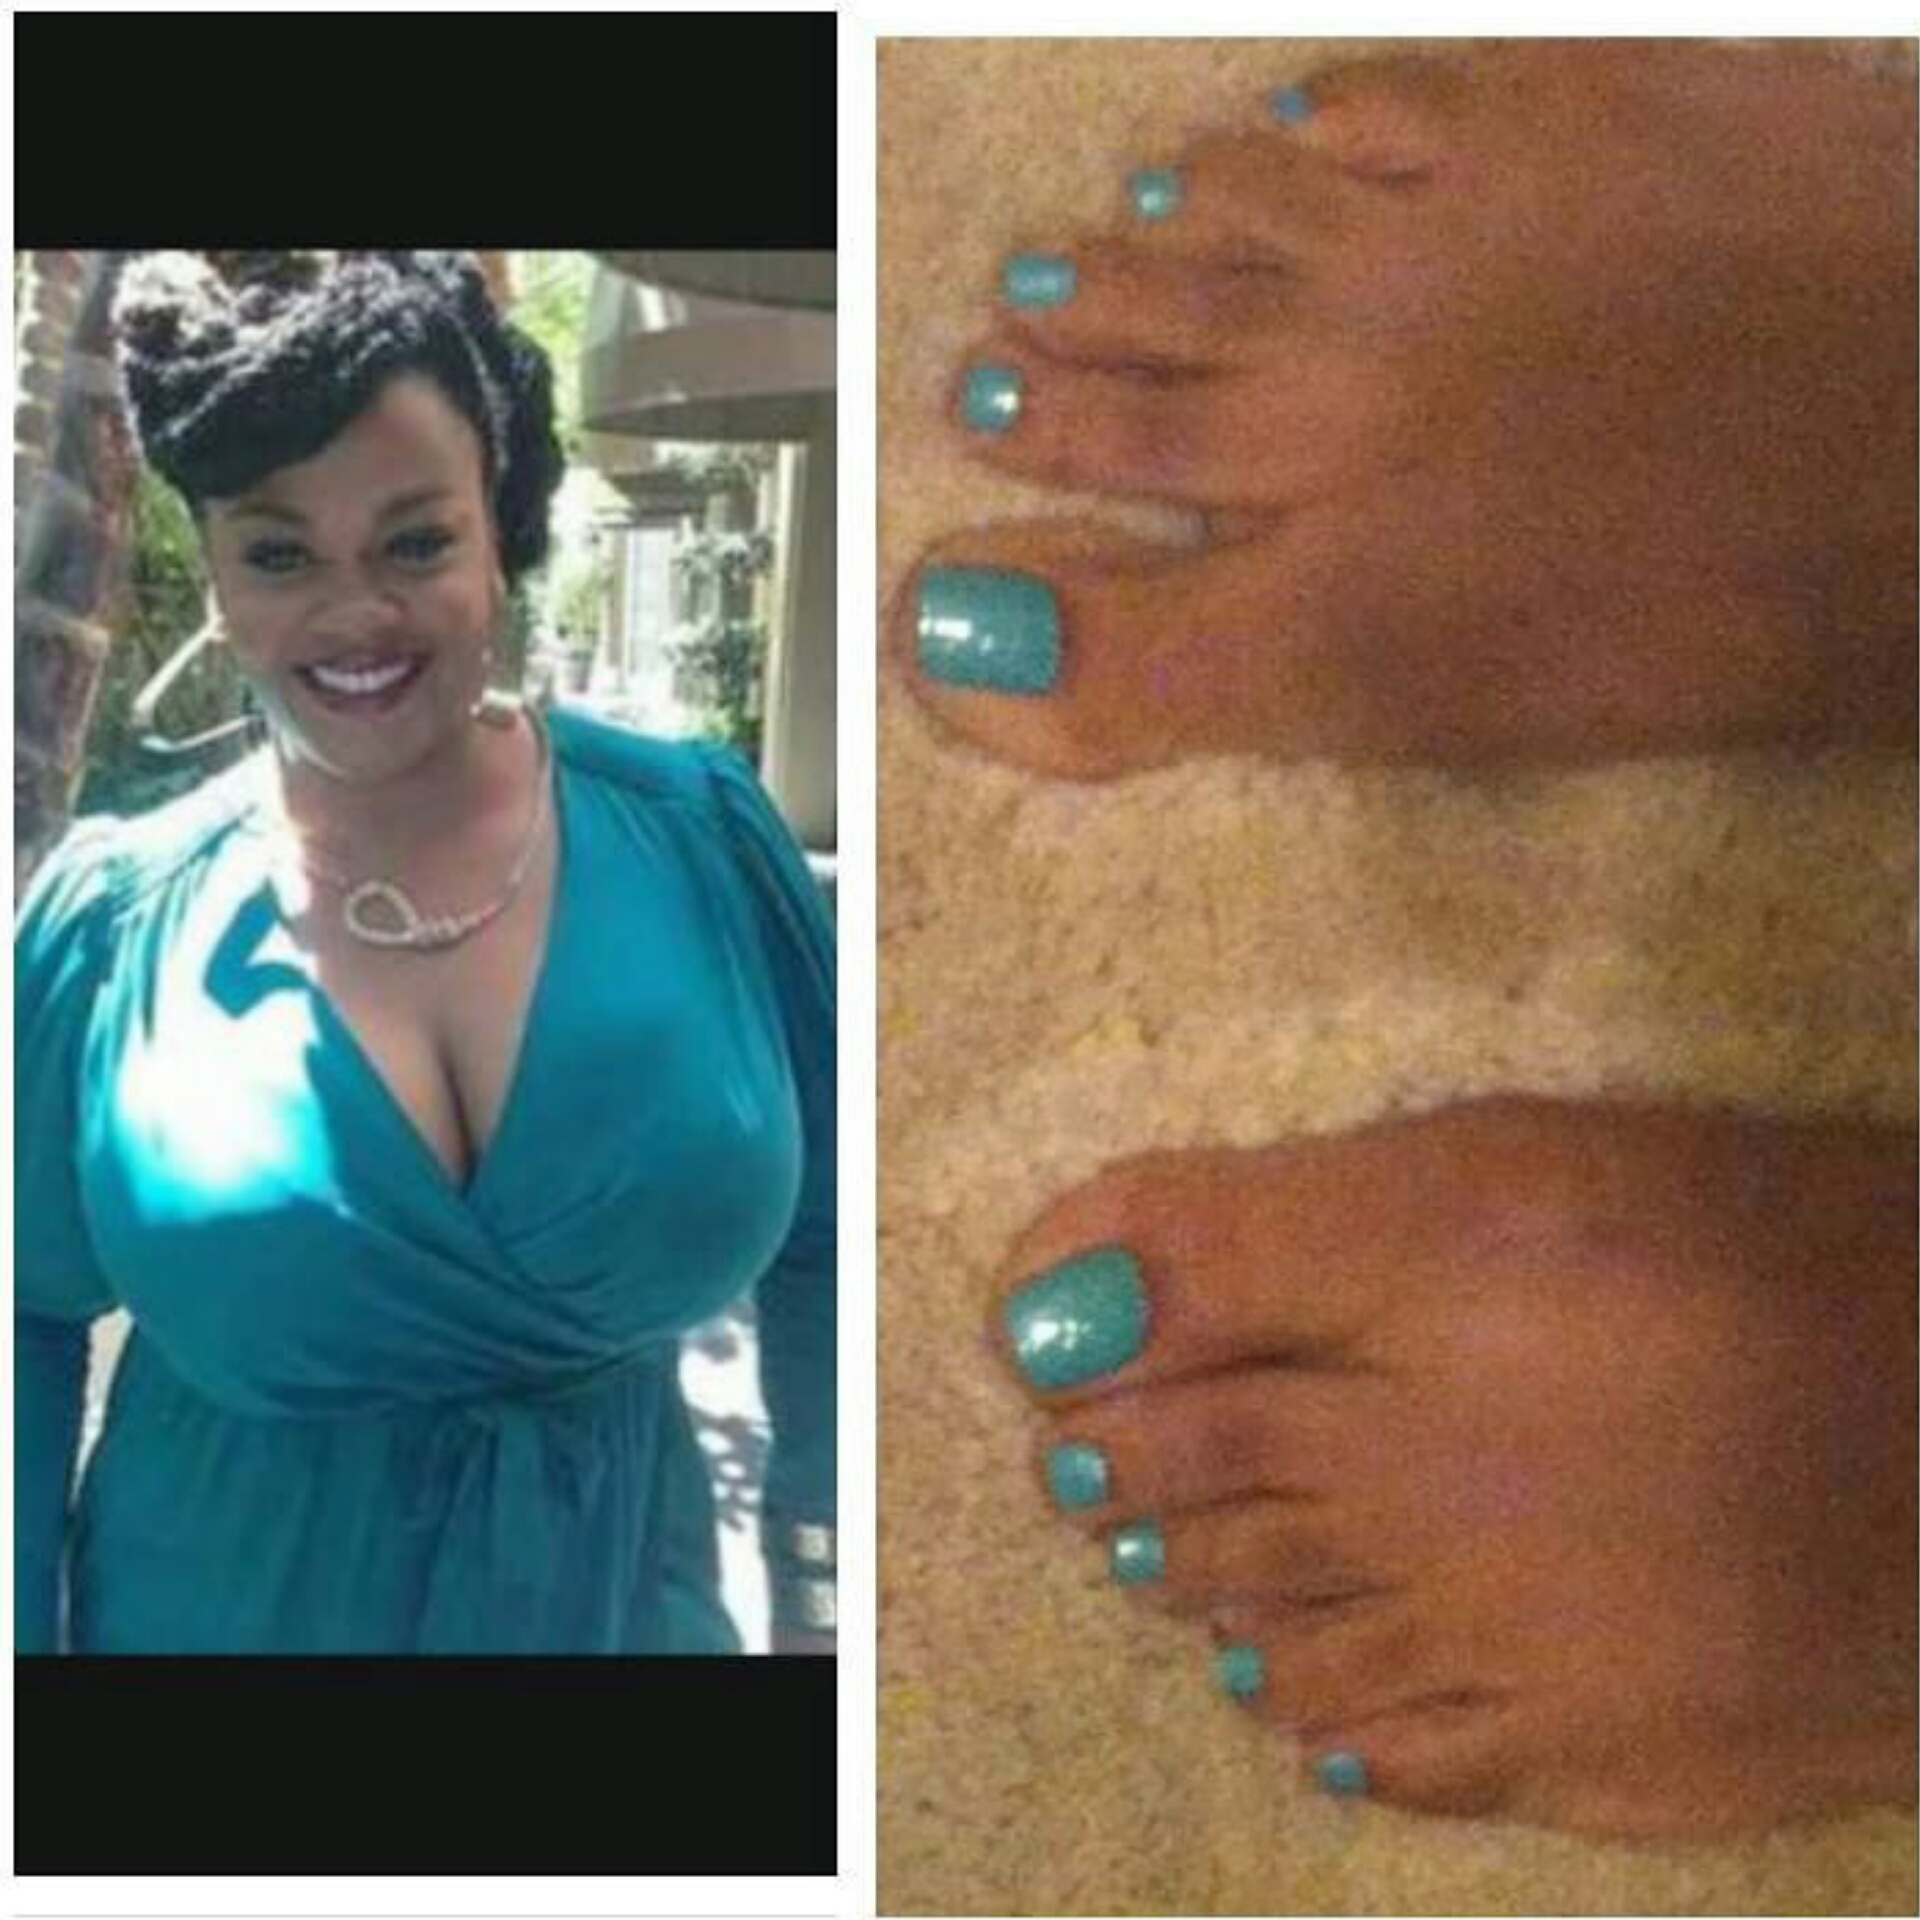 Ebony Feet Pics